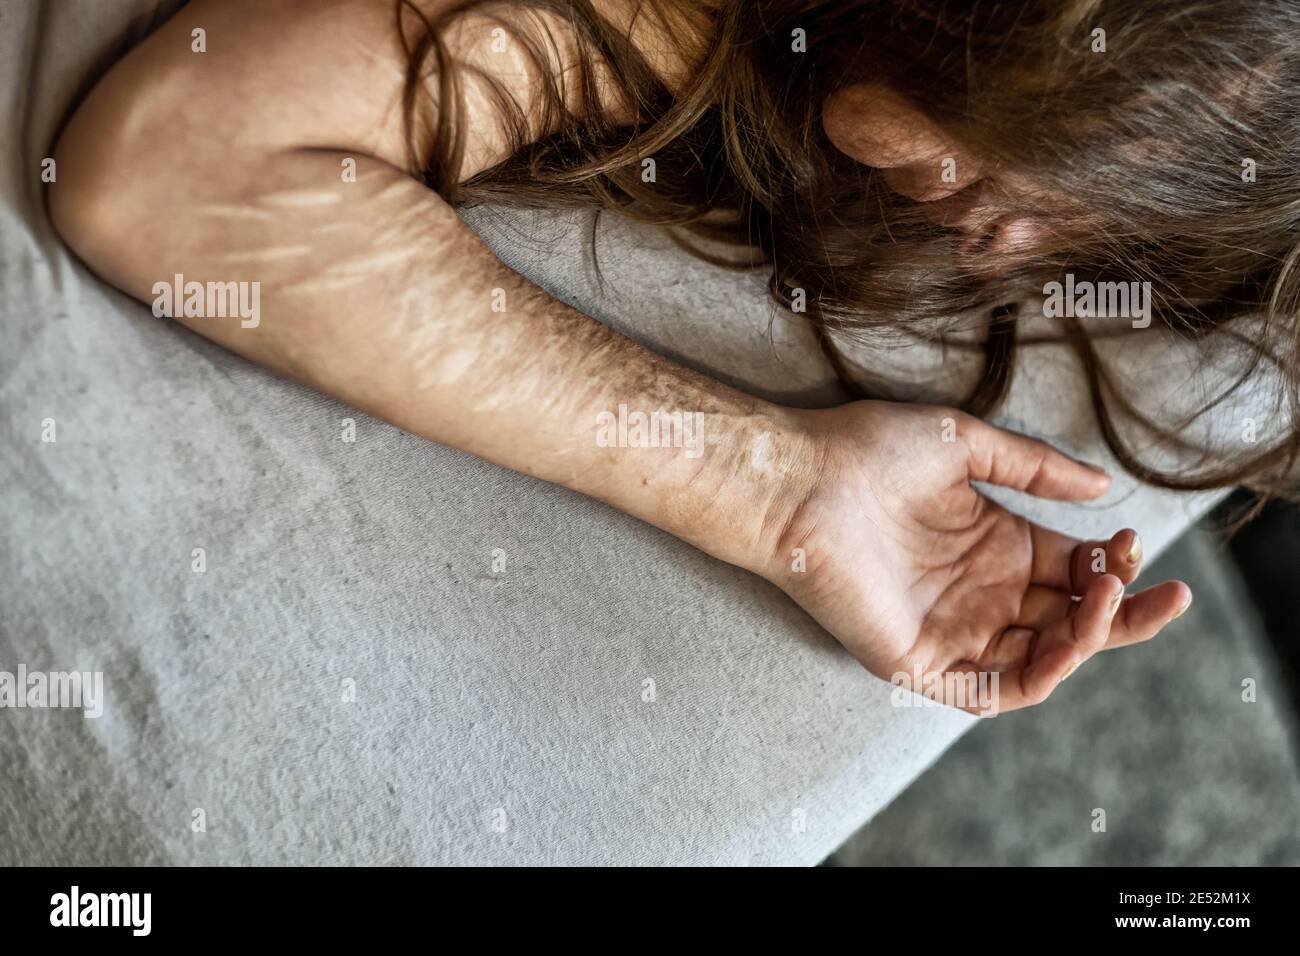 Hand, Arm und Haar einer Frau mit schweren Schnitten und Narben von Selbstverstümmelung in Frustration, Selbstmissbrauchs, Borderline-Persönlichkeitsstörung, Kopierraum Stockfoto